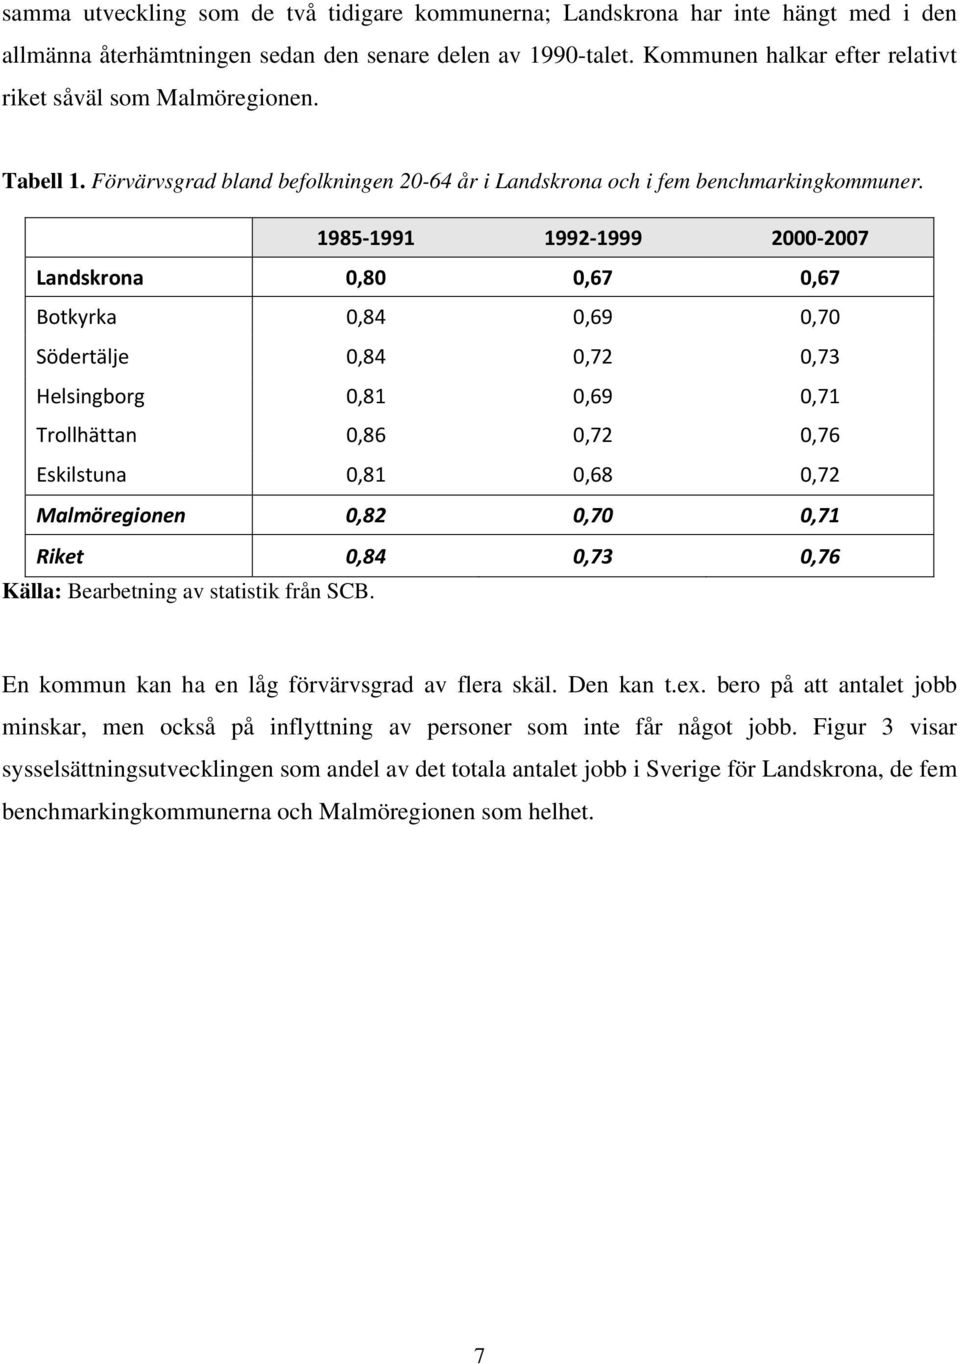 1985 1991 1992 1999 2000 2007 Landskrona 0,80 0,67 0,67 Botkyrka 0,84 0,69 0,70 Södertälje 0,84 0,72 0,73 Helsingborg 0,81 0,69 0,71 Trollhättan 0,86 0,72 0,76 Eskilstuna 0,81 0,68 0,72 Malmöregionen